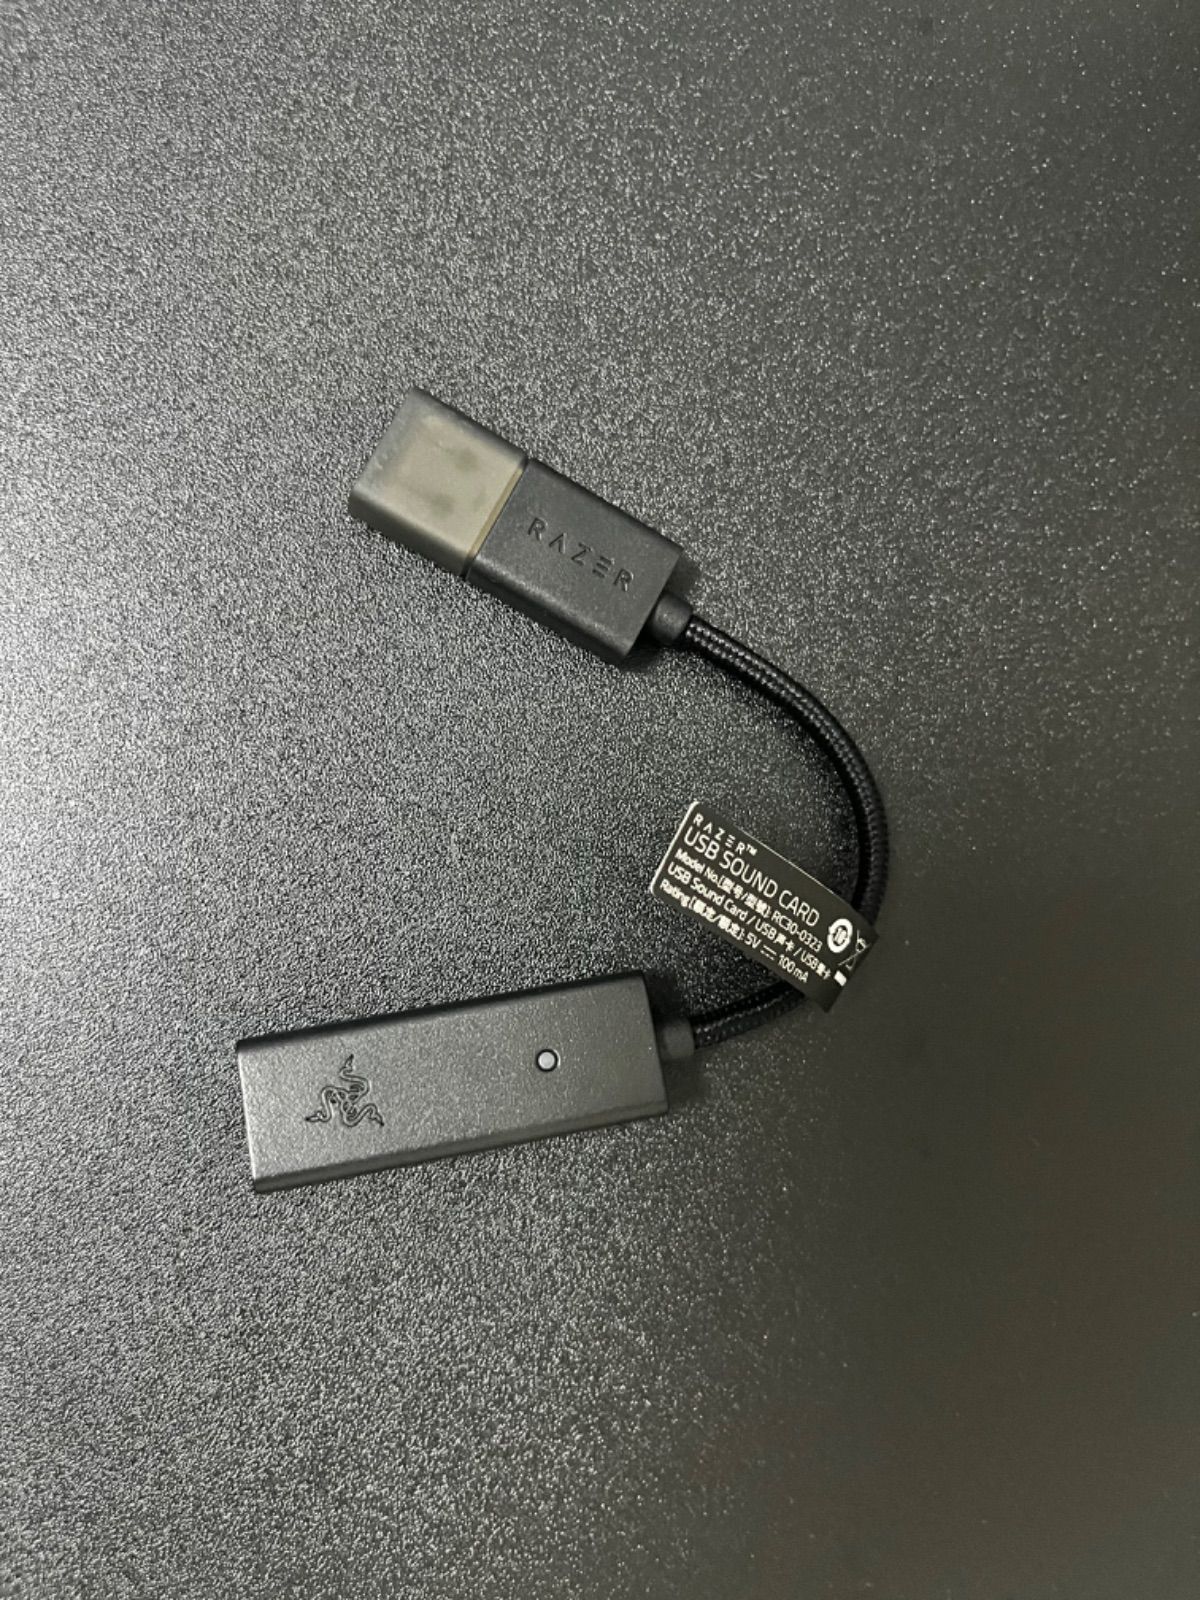 Razer BlackShark V2 USBサウンドカード付のみ(未使用) - メルカリ